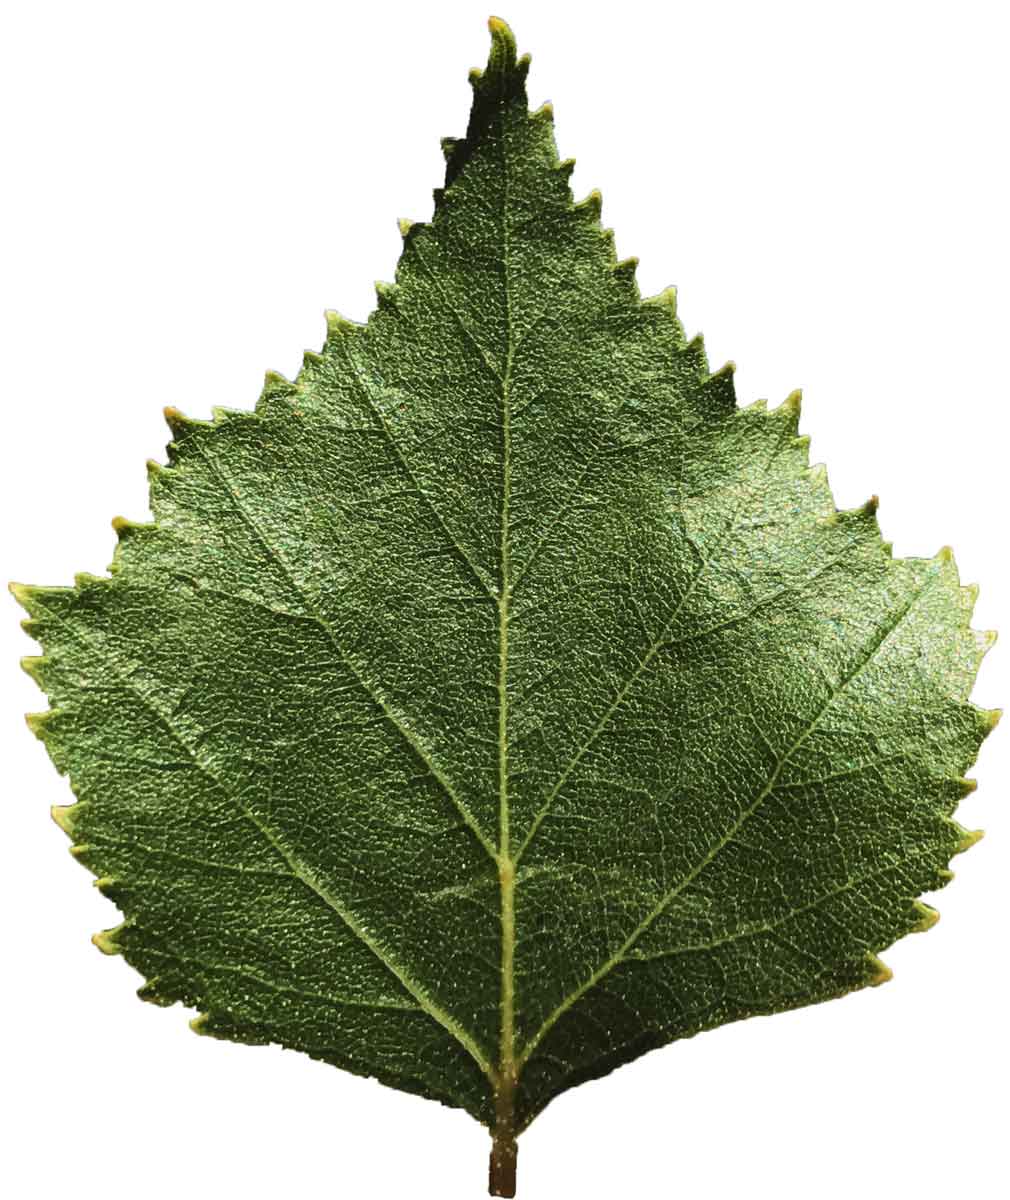 A young birch leaf